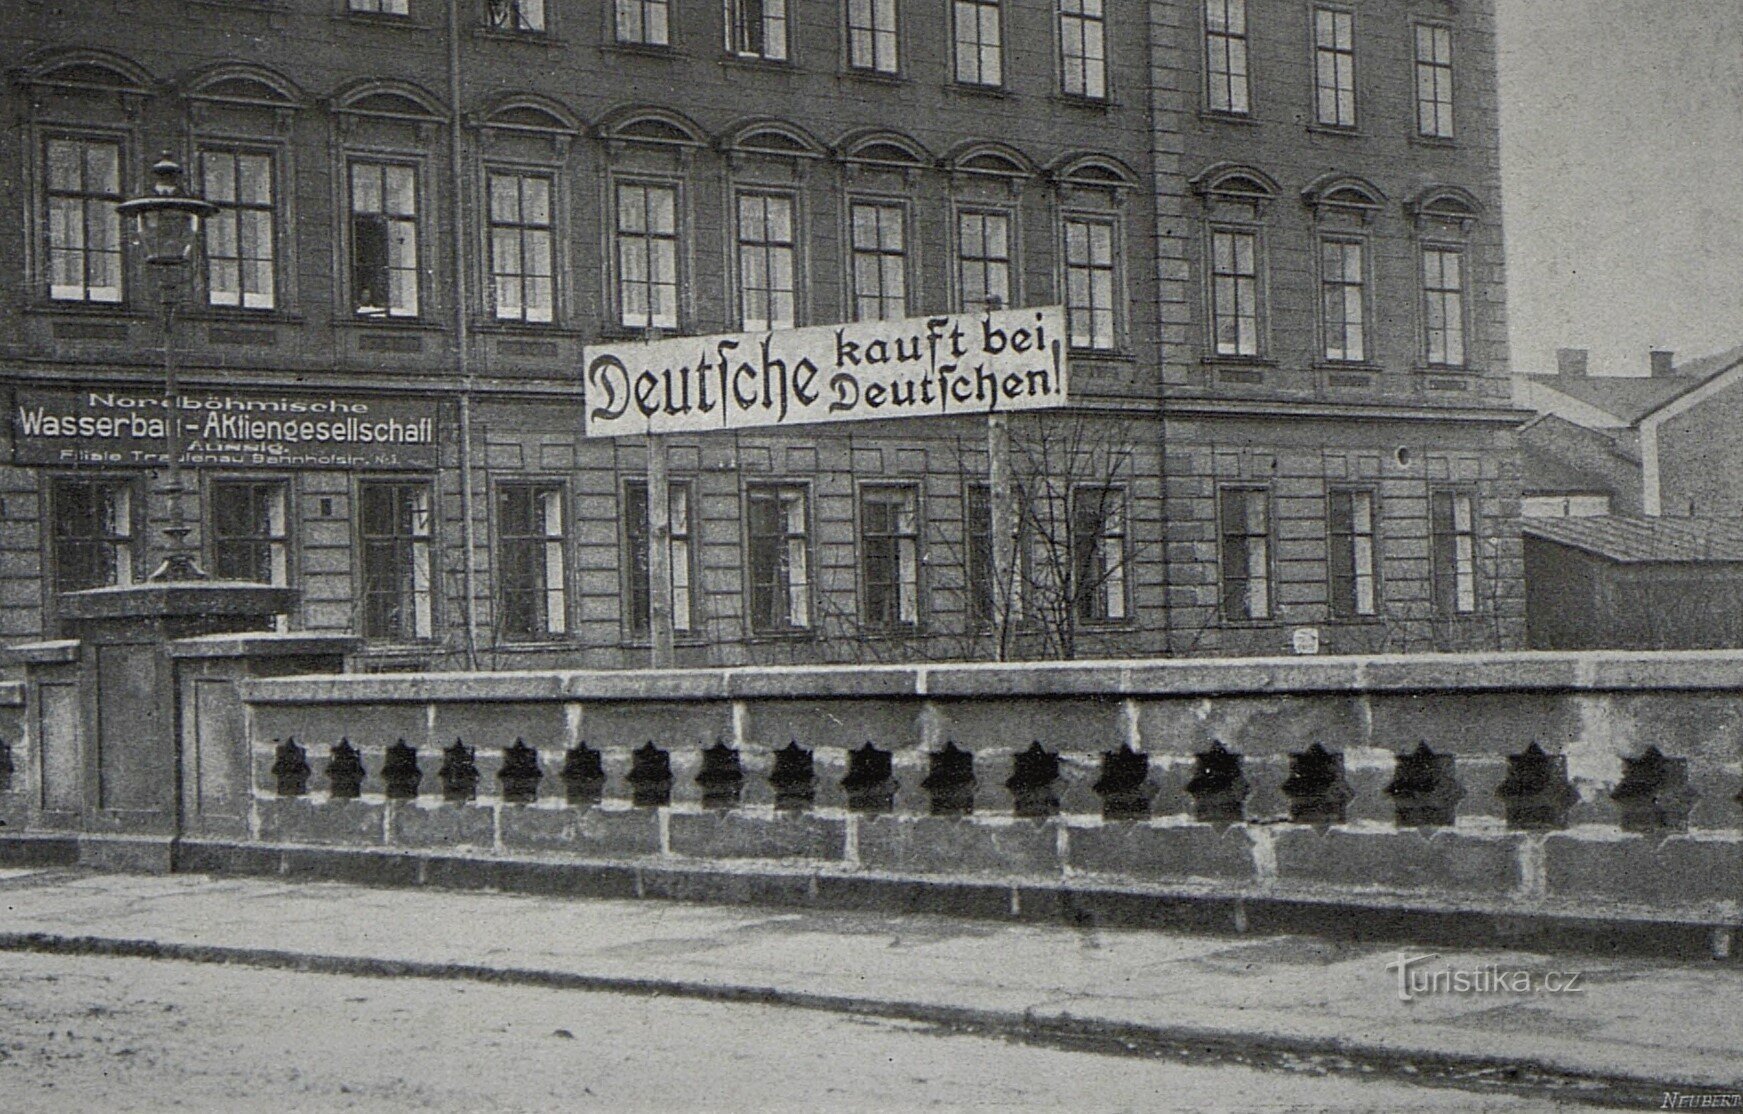 Ett typiskt exempel på tjeckisk-tysk svartsjuka från 1914